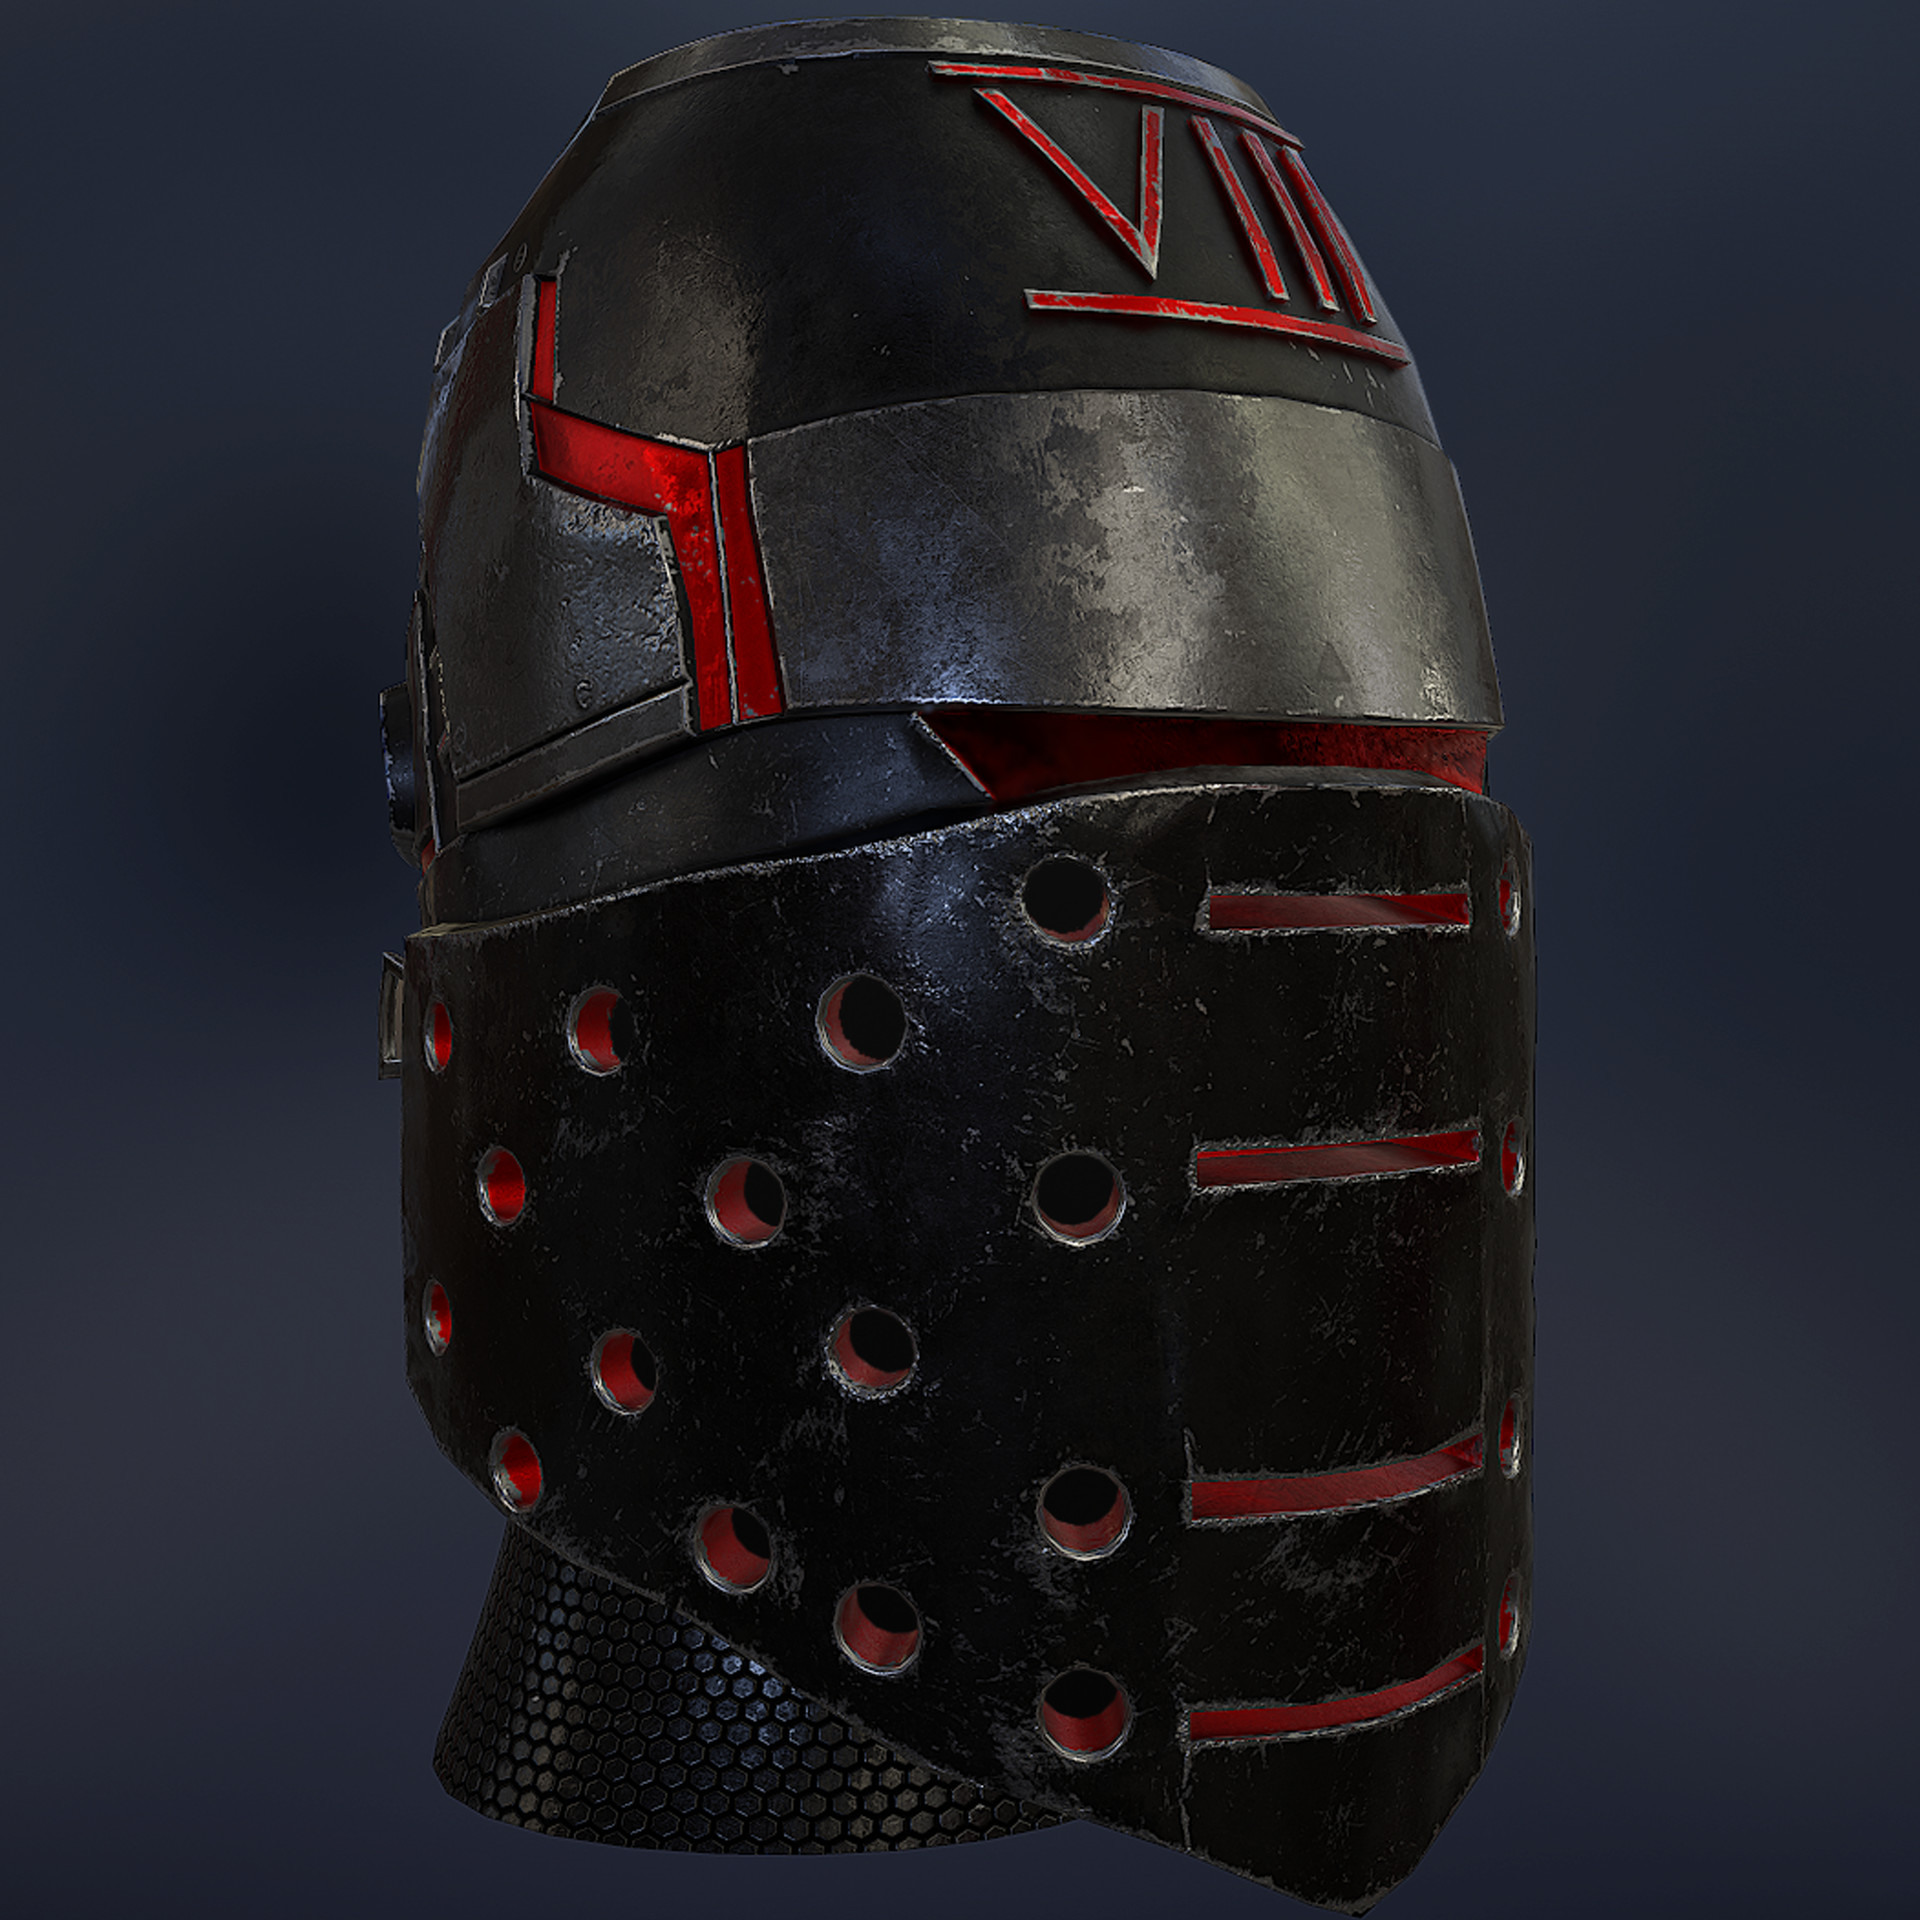 sci fi knight helmet